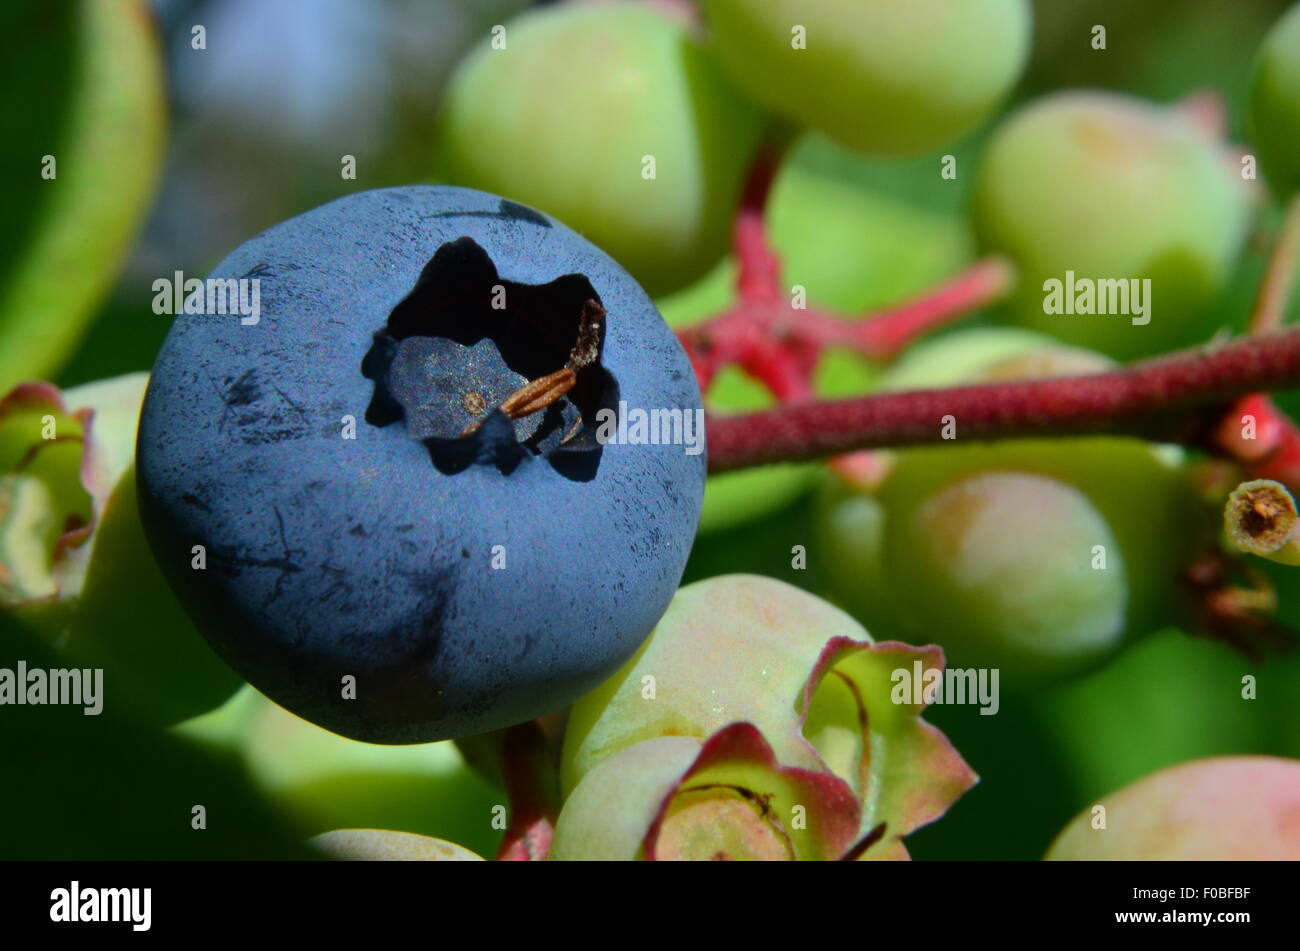 La myrtille baies mûres, fruits, bush, bleu, Close up Banque D'Images